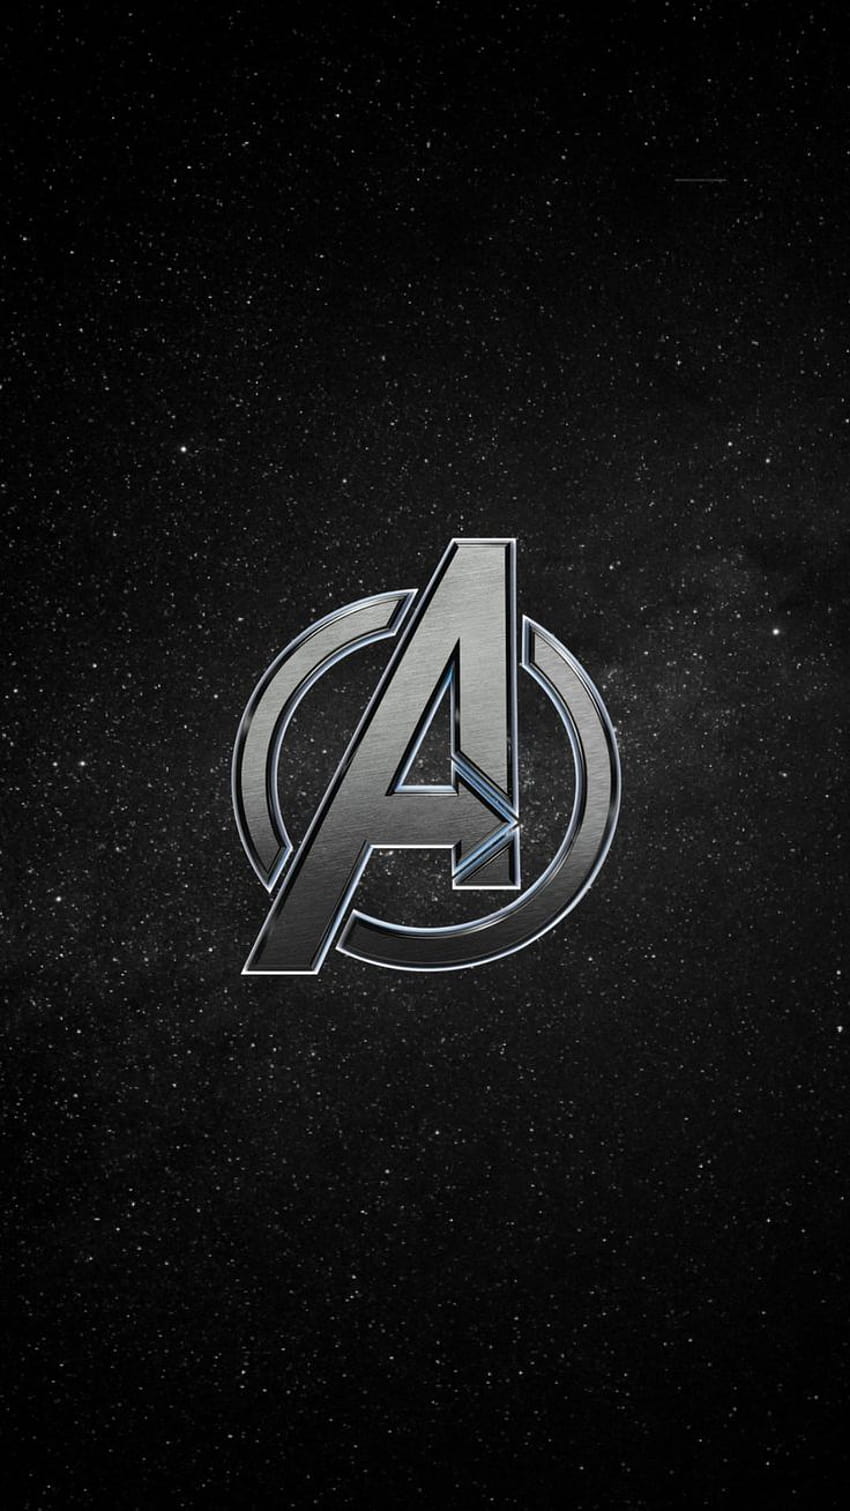 71+] Avengers Logo Wallpaper - WallpaperSafari